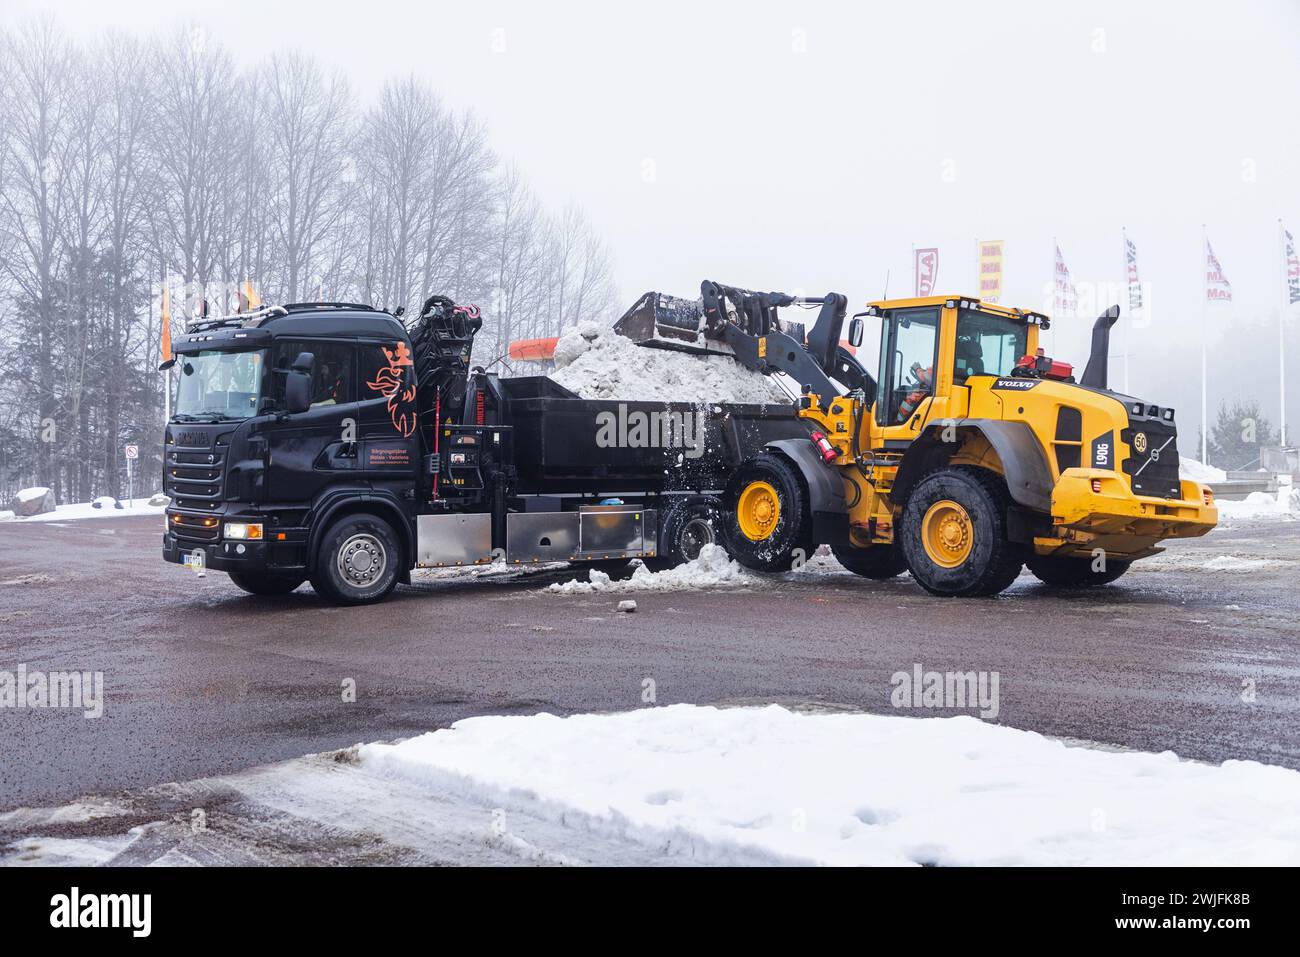 Météo saisonnière, une chargeuse sur pneus chargeant la neige pour la déneiger avec un camion jeudi à Motala, en Suède. Banque D'Images